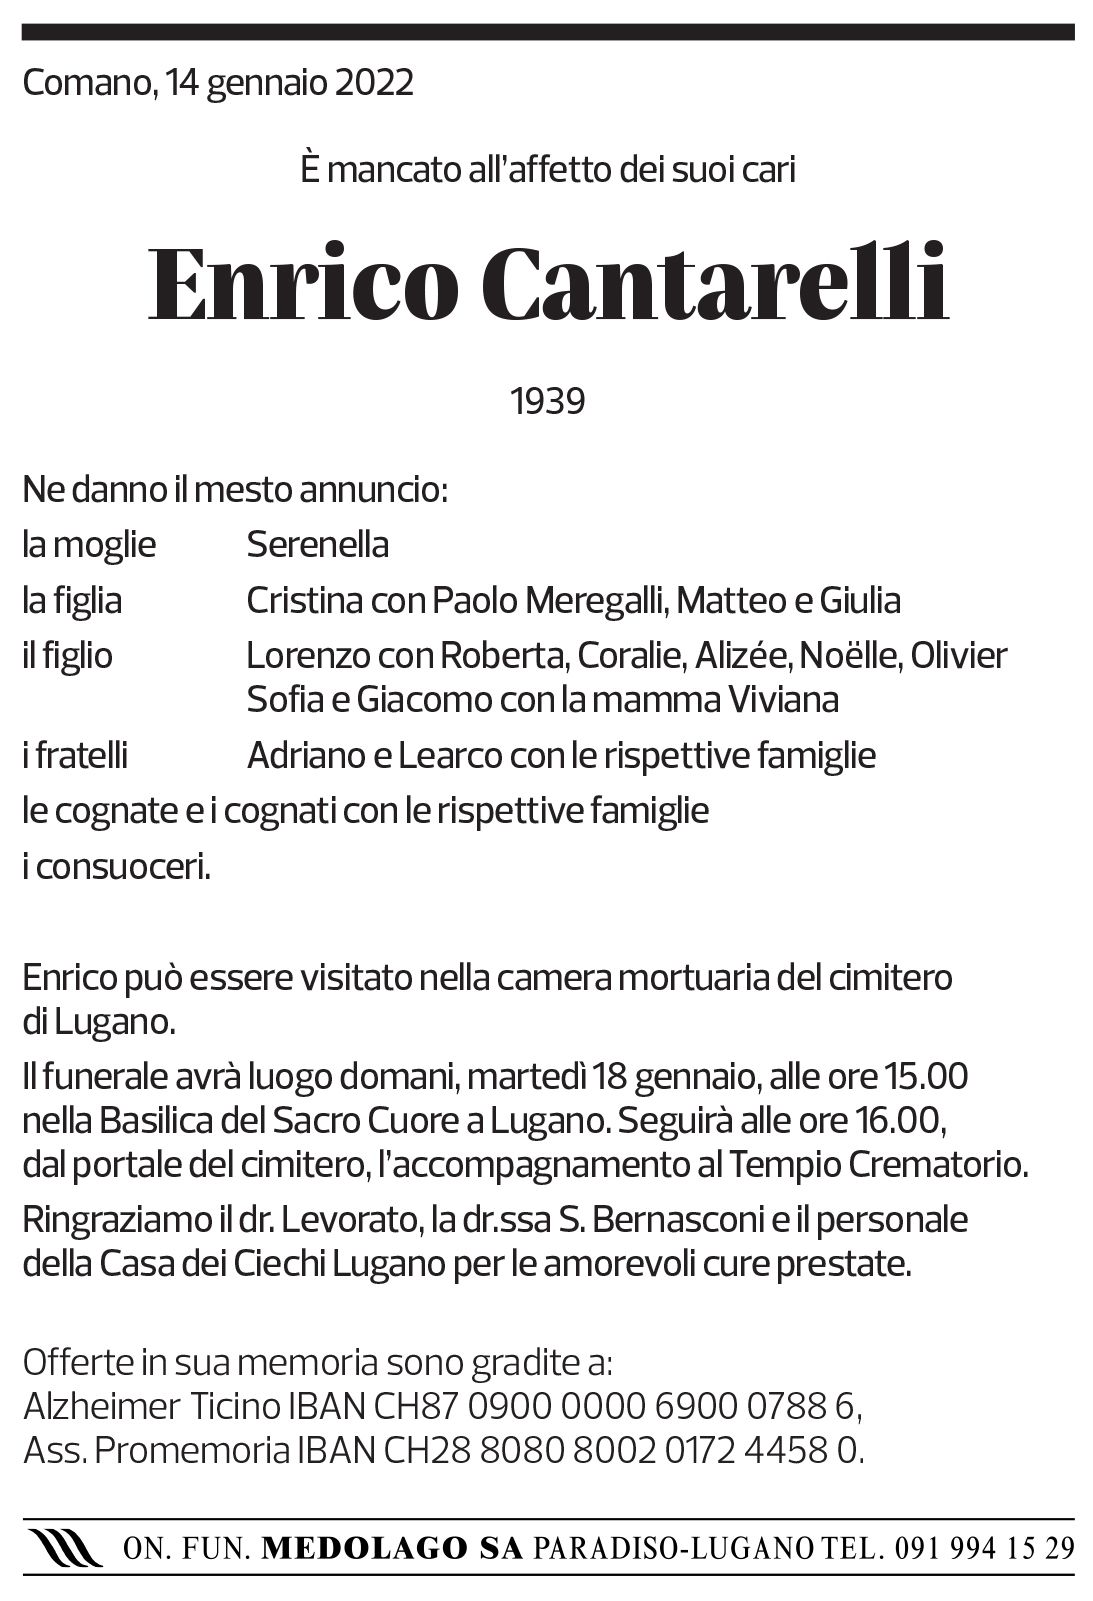 Annuncio funebre Enrico Cantarelli